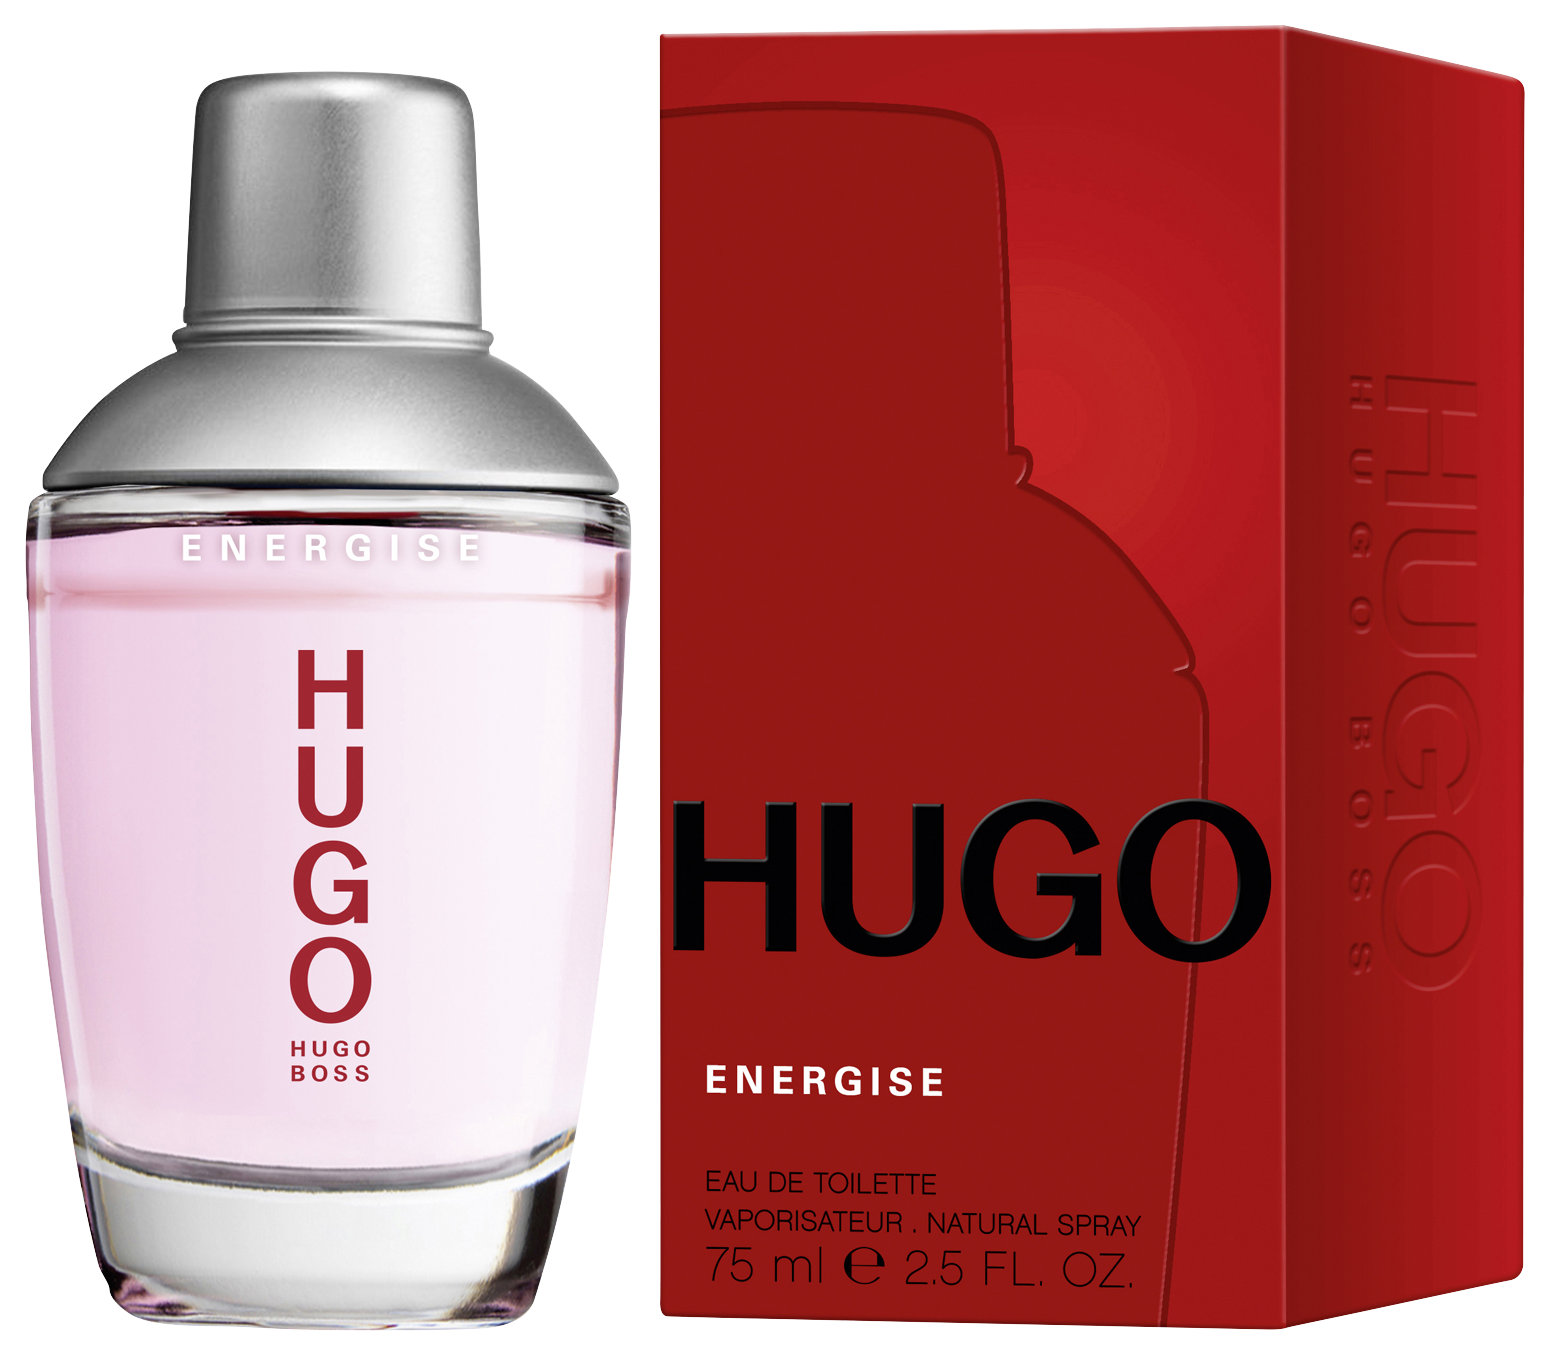 Boss Hugo Energise Eau de Toilette 75 ml